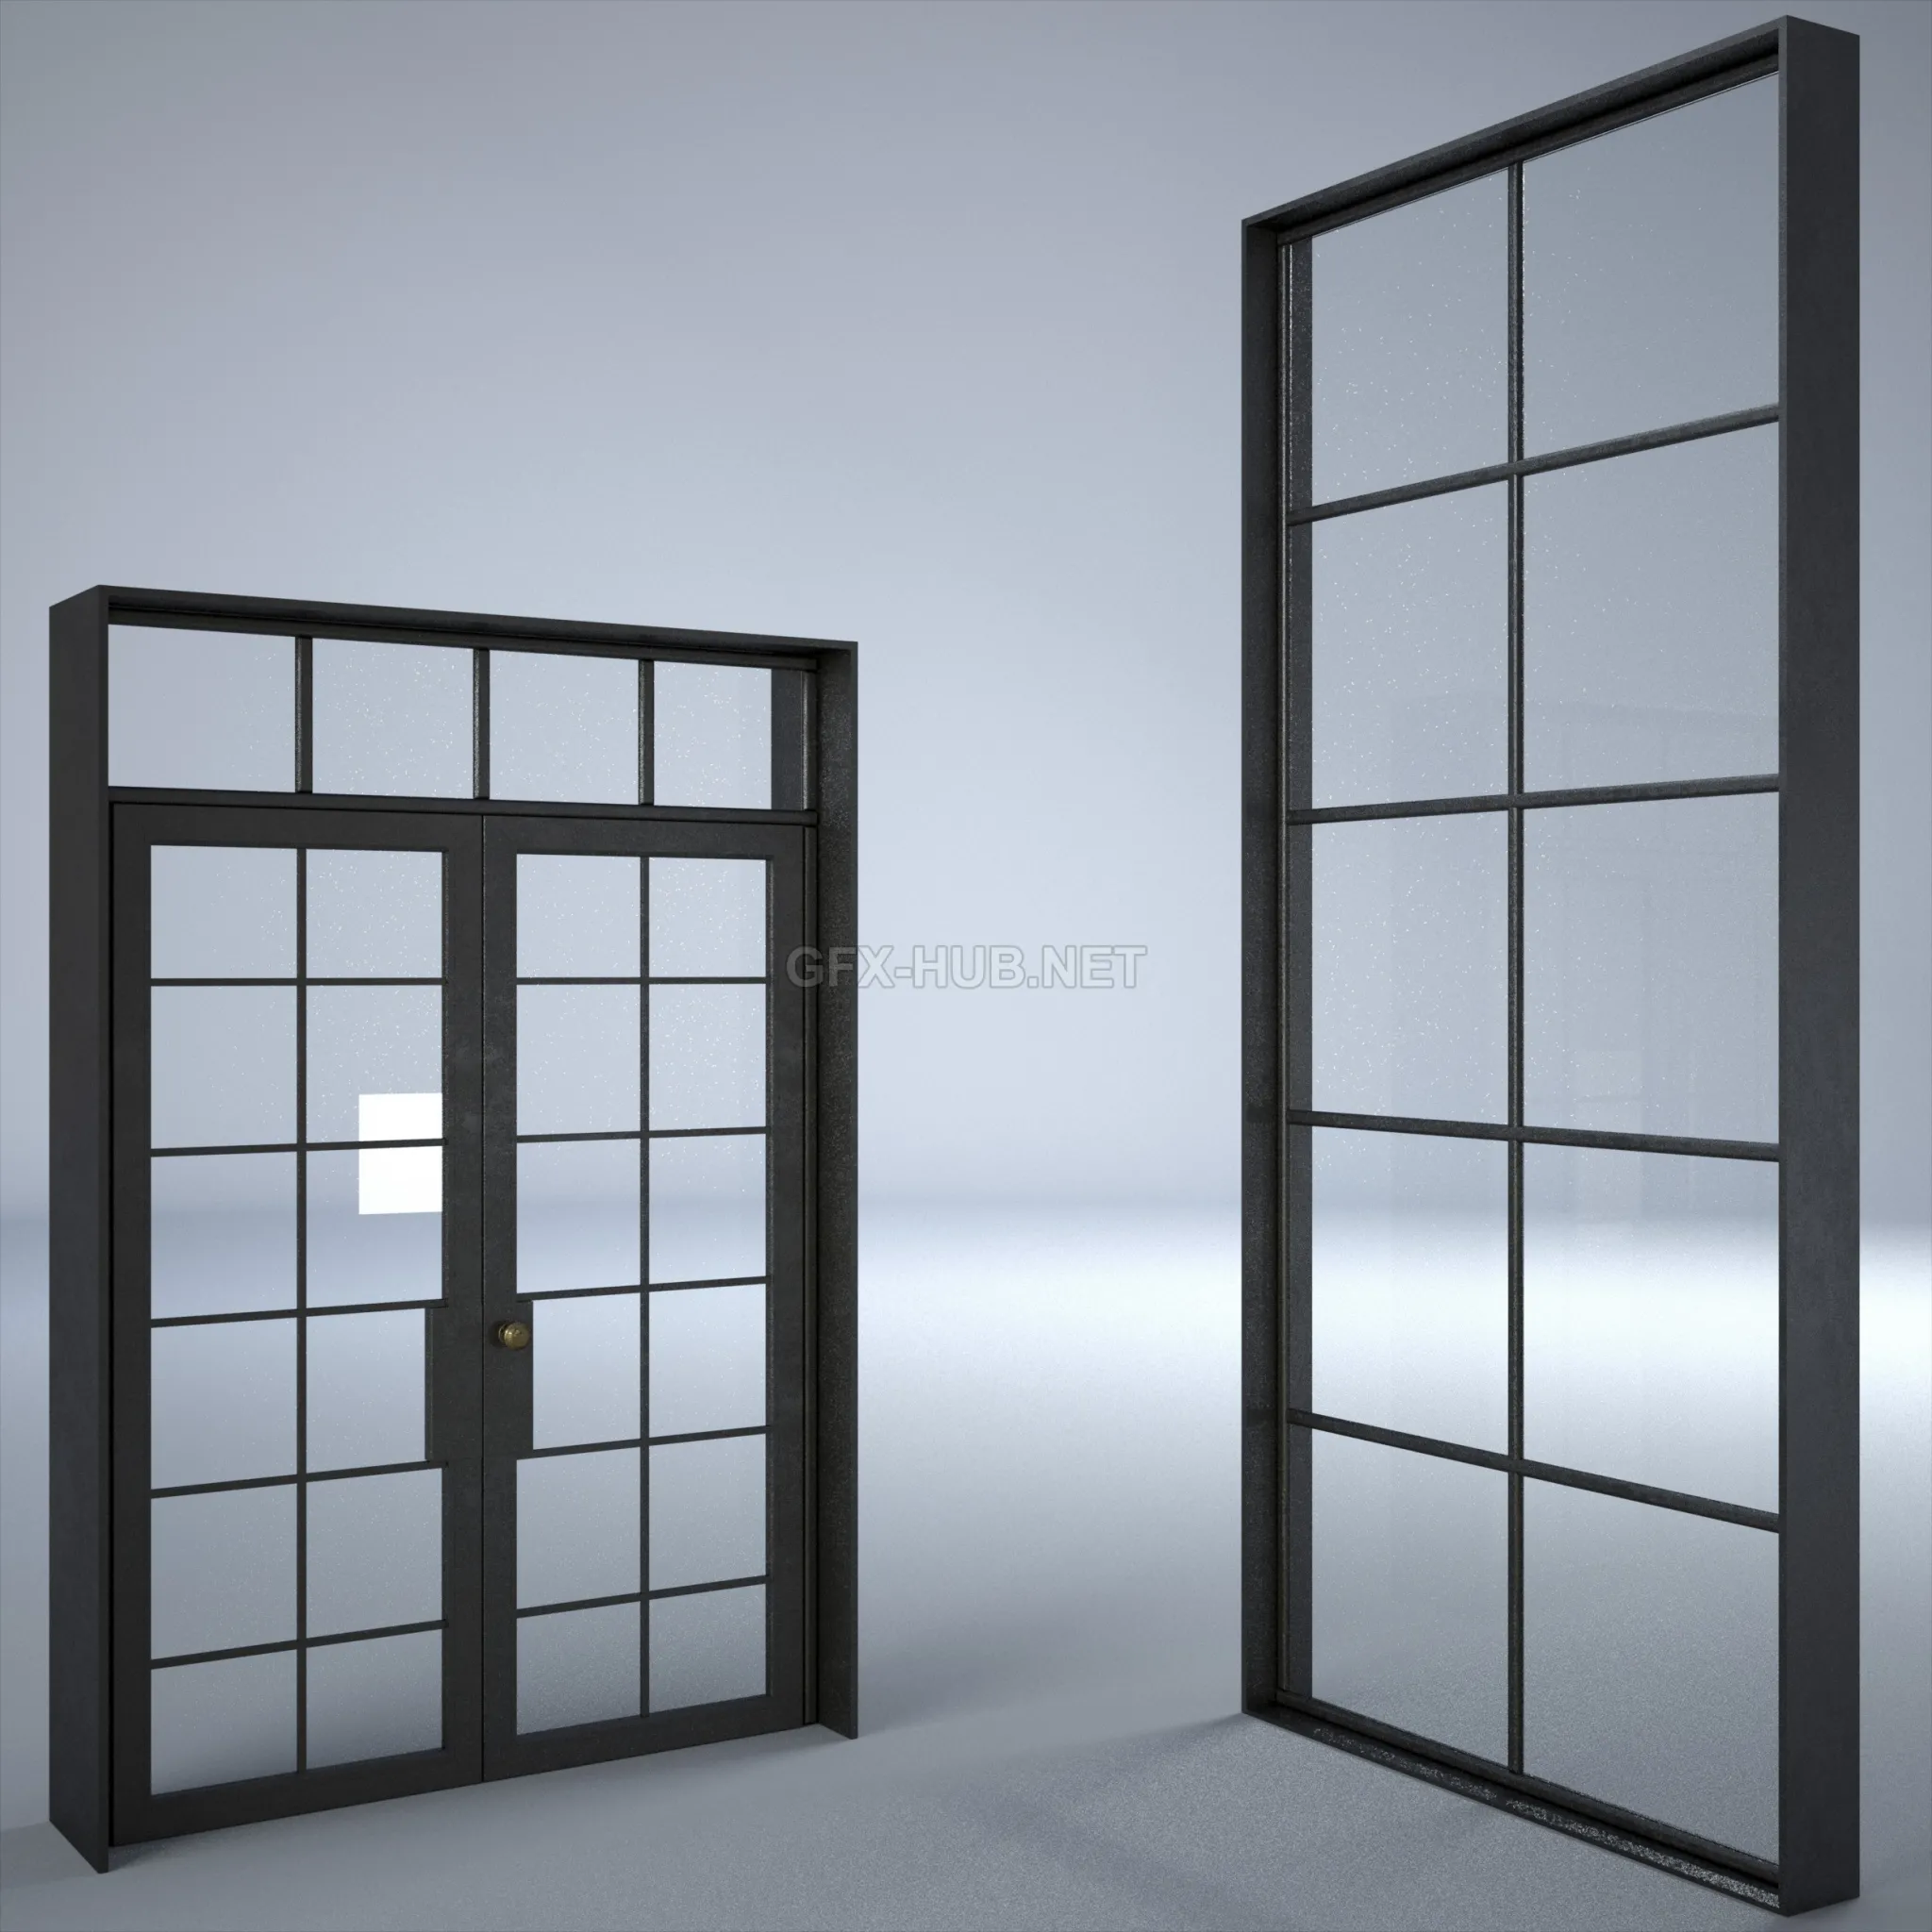 FURNITURE 3D MODELS – Industrial Door and Window